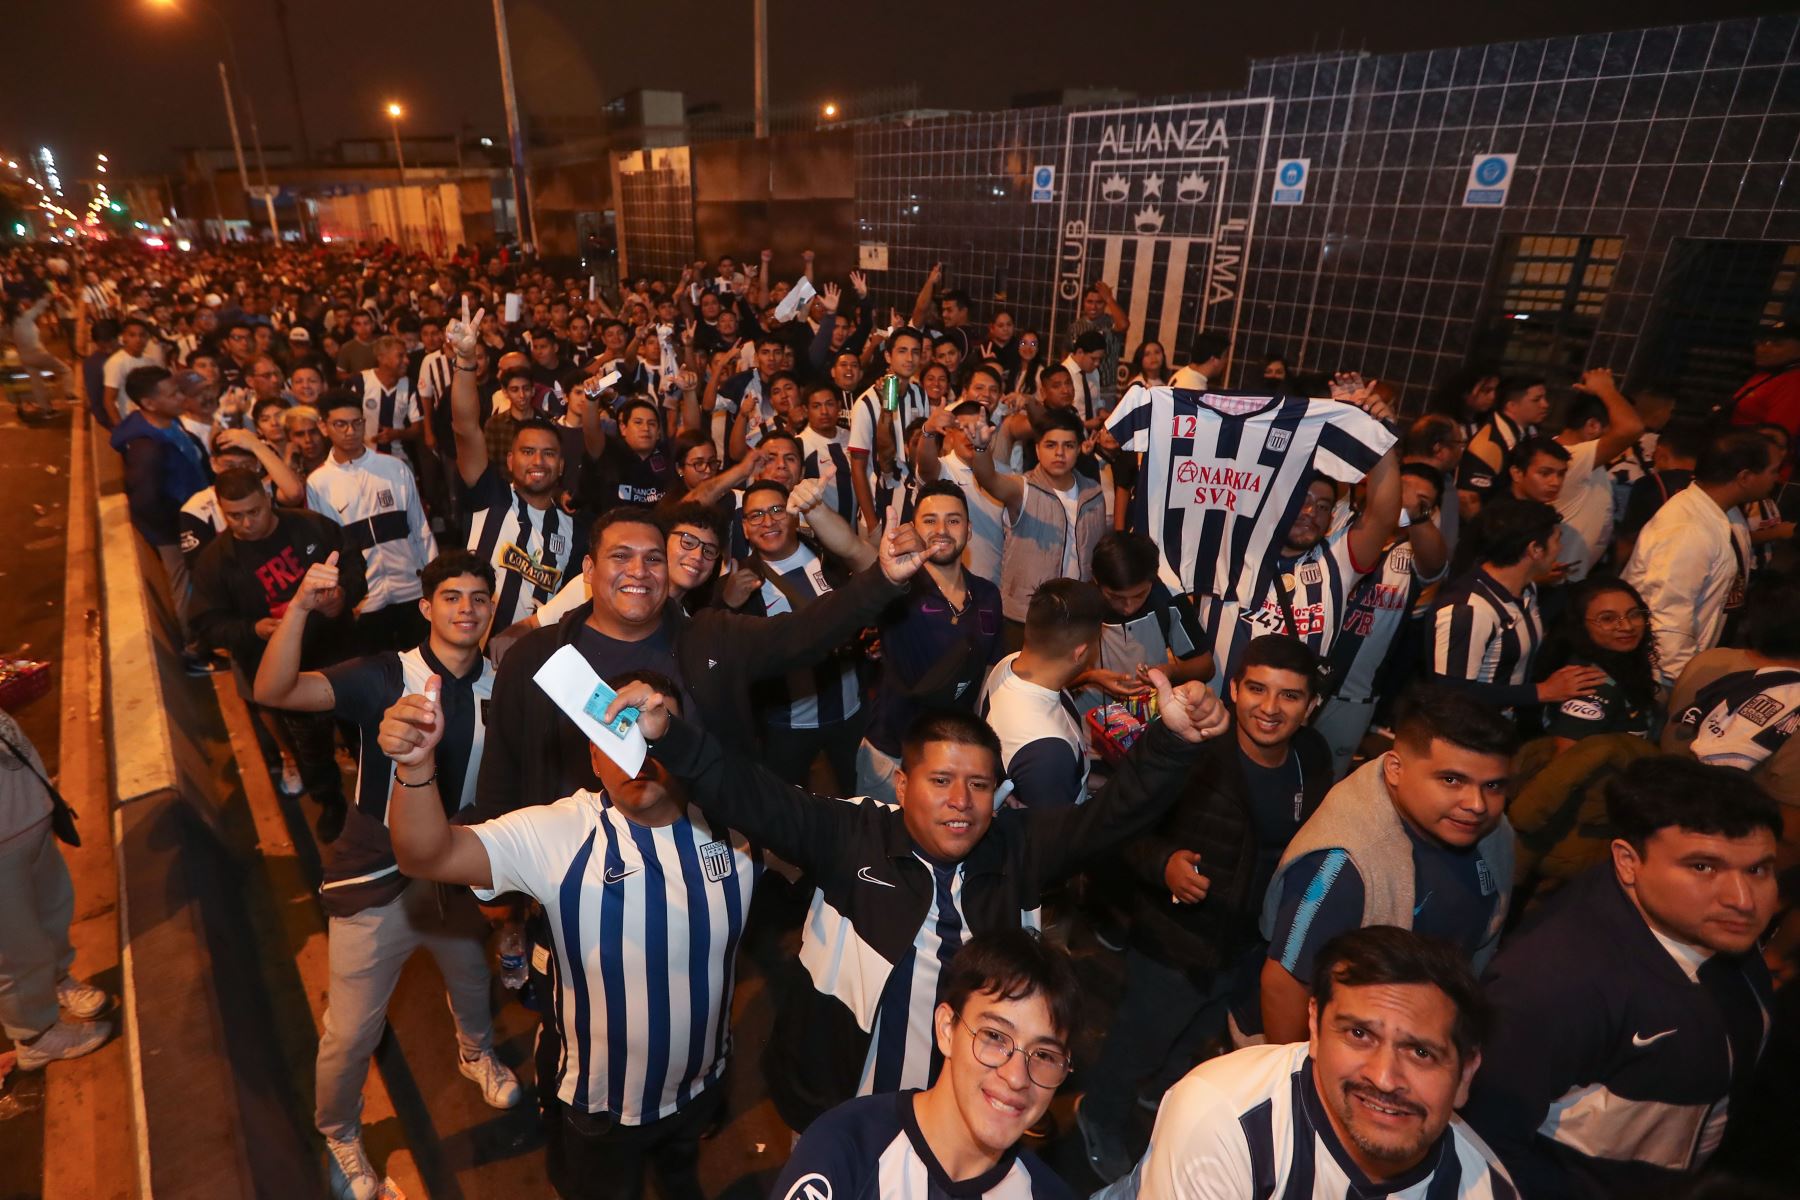 Hinchas de Alianza Lima viven la fiesta del fútbol previo al partido por la fase de grupos de la copa Libertadores donde enfrentaran al Club Libertad de Paraguay.
Foto: ANDINA/Ricardo Cuba